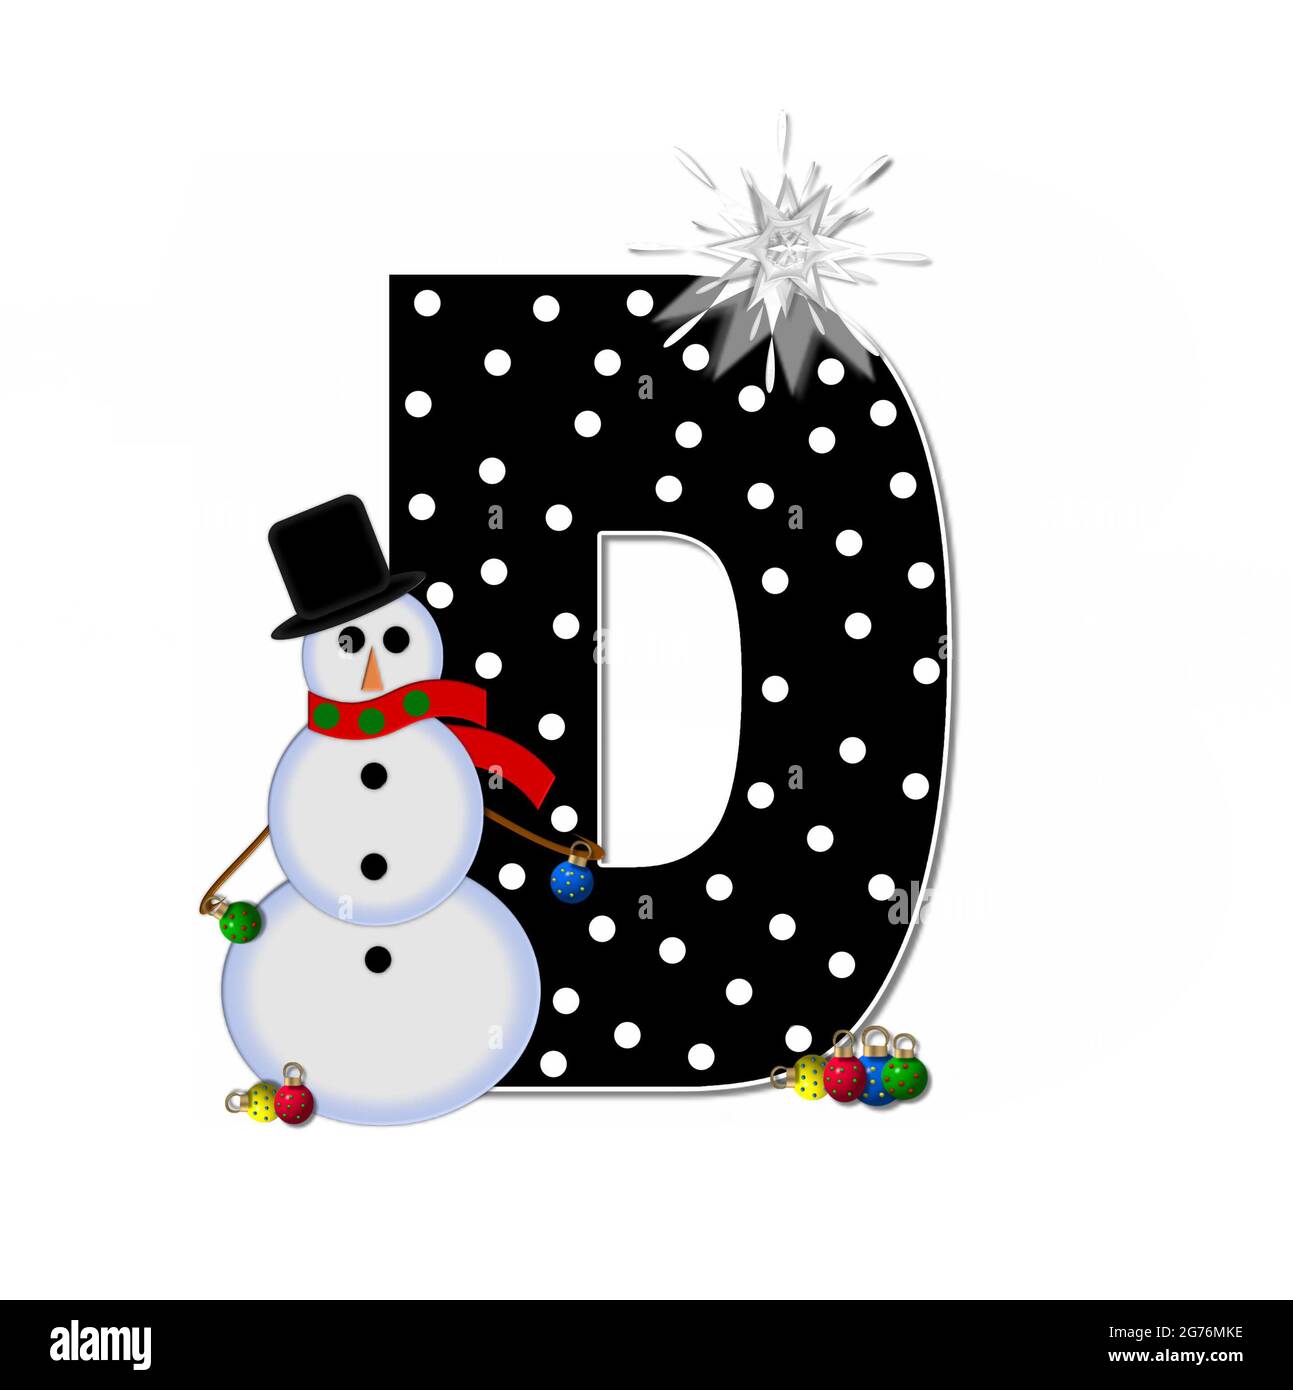 La letra D, en el conjunto del alfabeto 'Frosty', es negra y decorada con  un muñeco de nieve y adornos de Navidad. El muñeco de nieve lleva una  bufanda roja y una